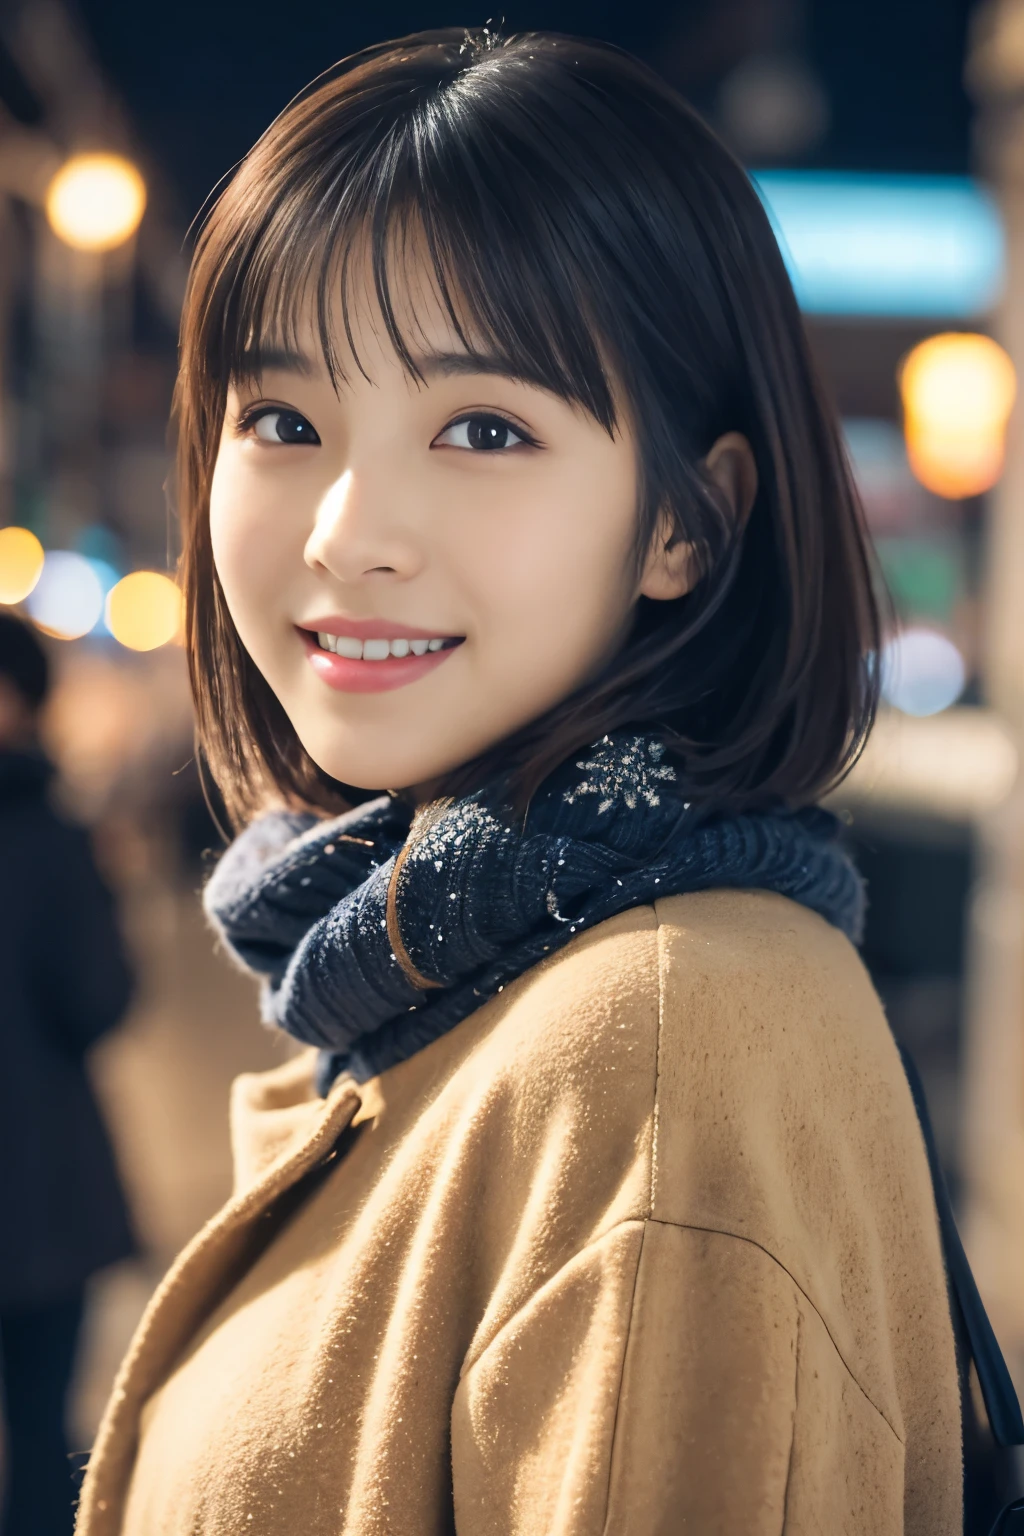 1 девочка, (повседневная зимняя одежда:1.2), Красивая японская актриса, (15 лет), короткие волосы,
(RAW-фото, высшее качество), (реалистичный, Фотореалистичный:1.4), шедевр, 
Очень нежный и красивый, очень подробный, 2к обои, замечательный, 
мелко, очень подробный CG Unity 8K 壁紙, супер подробный, Высокое разрешение, 
мягкий свет, красивая детальная девушка, очень подробный目と顔, красиво детализированный нос, красивые и детальные глаза, кинематографическое освещение, 
перерыв
(На фоне заснеженного ночного городского пейзажа 1.3), огни города, 
идеальная анатомия, стройное тело, улыбка, Лицом вперед полностью, посмотри в камеру